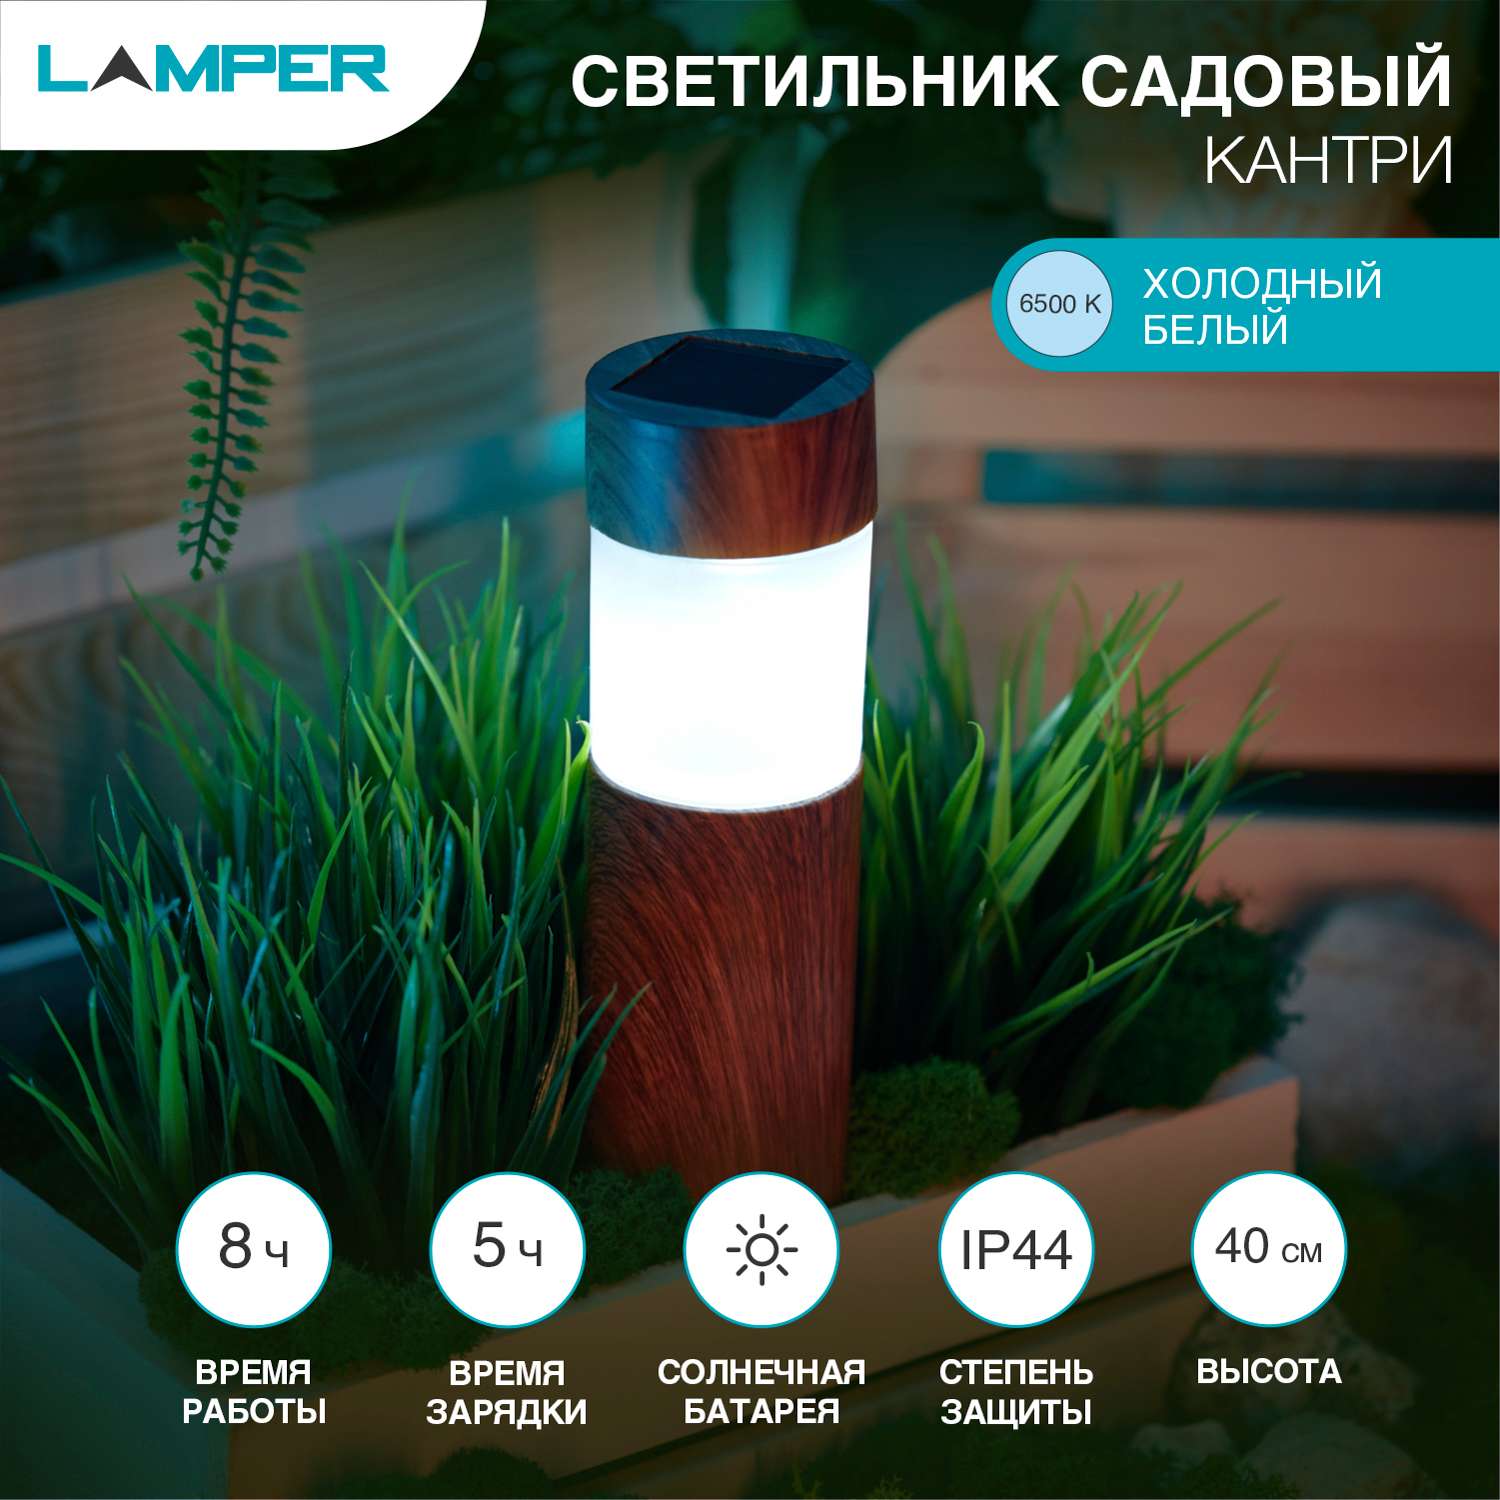 Светильник садовый LAMPER Одуванчик 1 метр со встроенным аккумулятором солнечной панелью и датчиком освещенности - фото 2